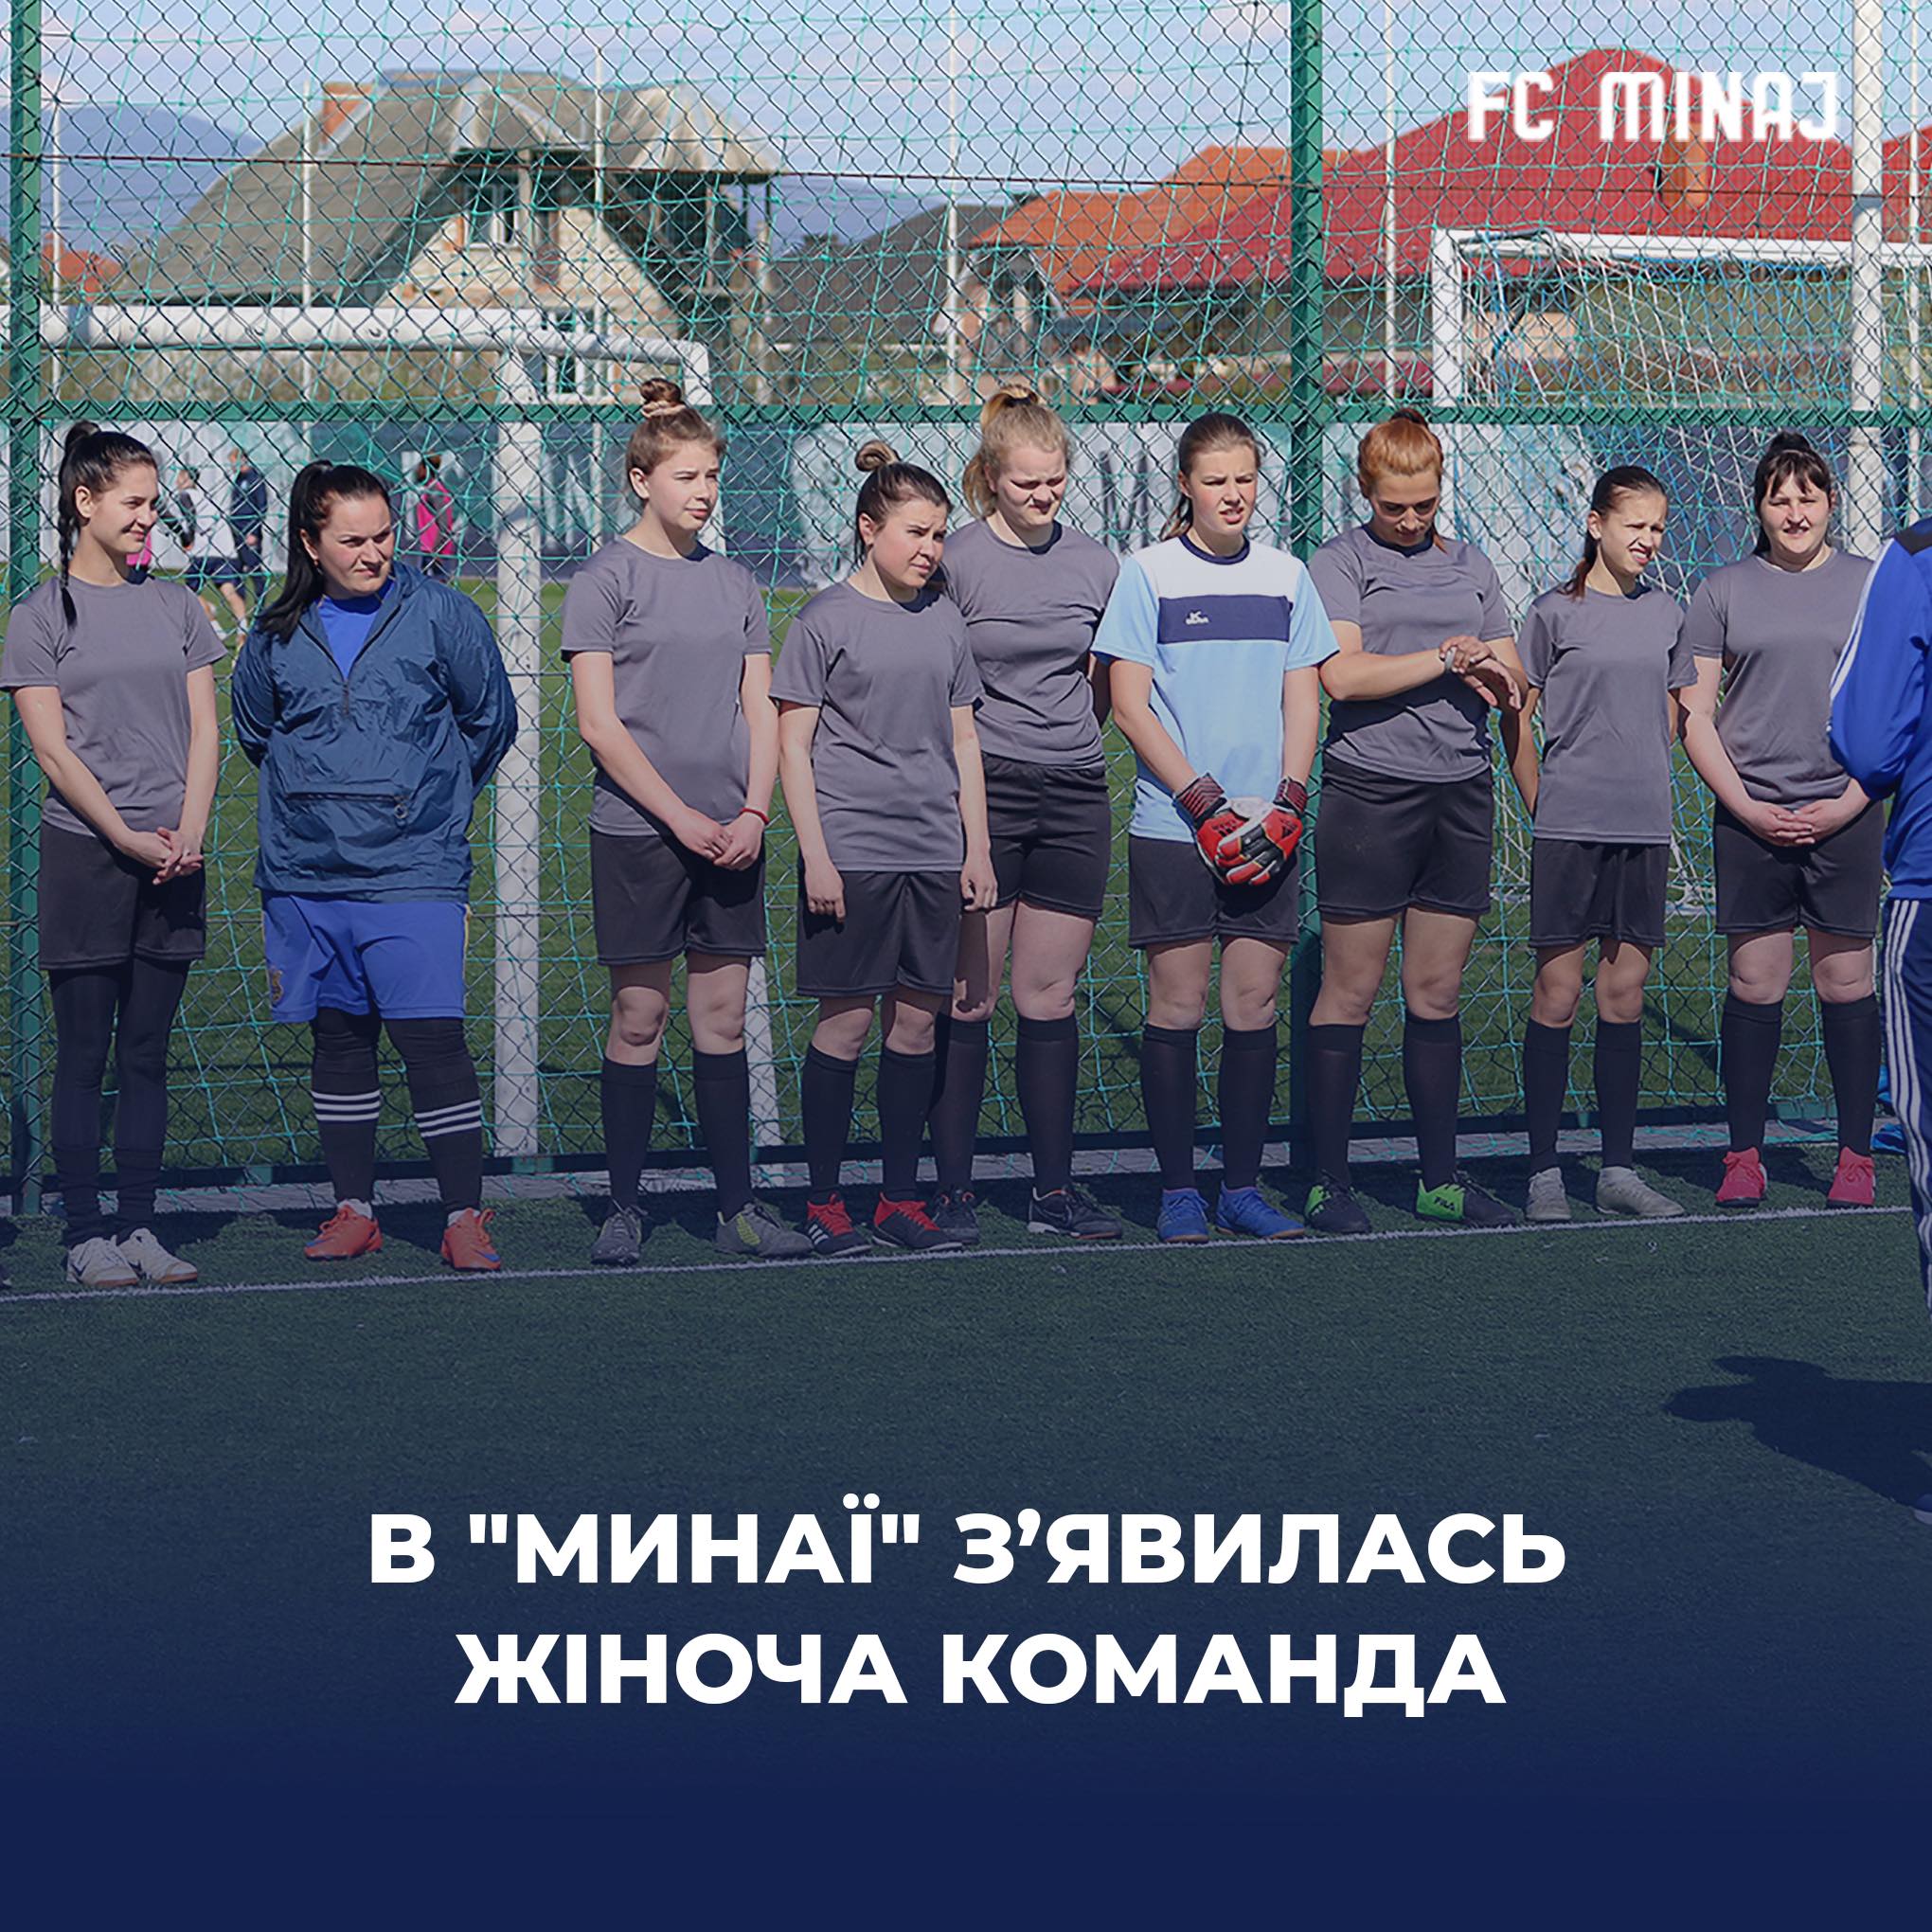 Закарпатський футбольний клуб “Минай” відтепер має і жіночу команду